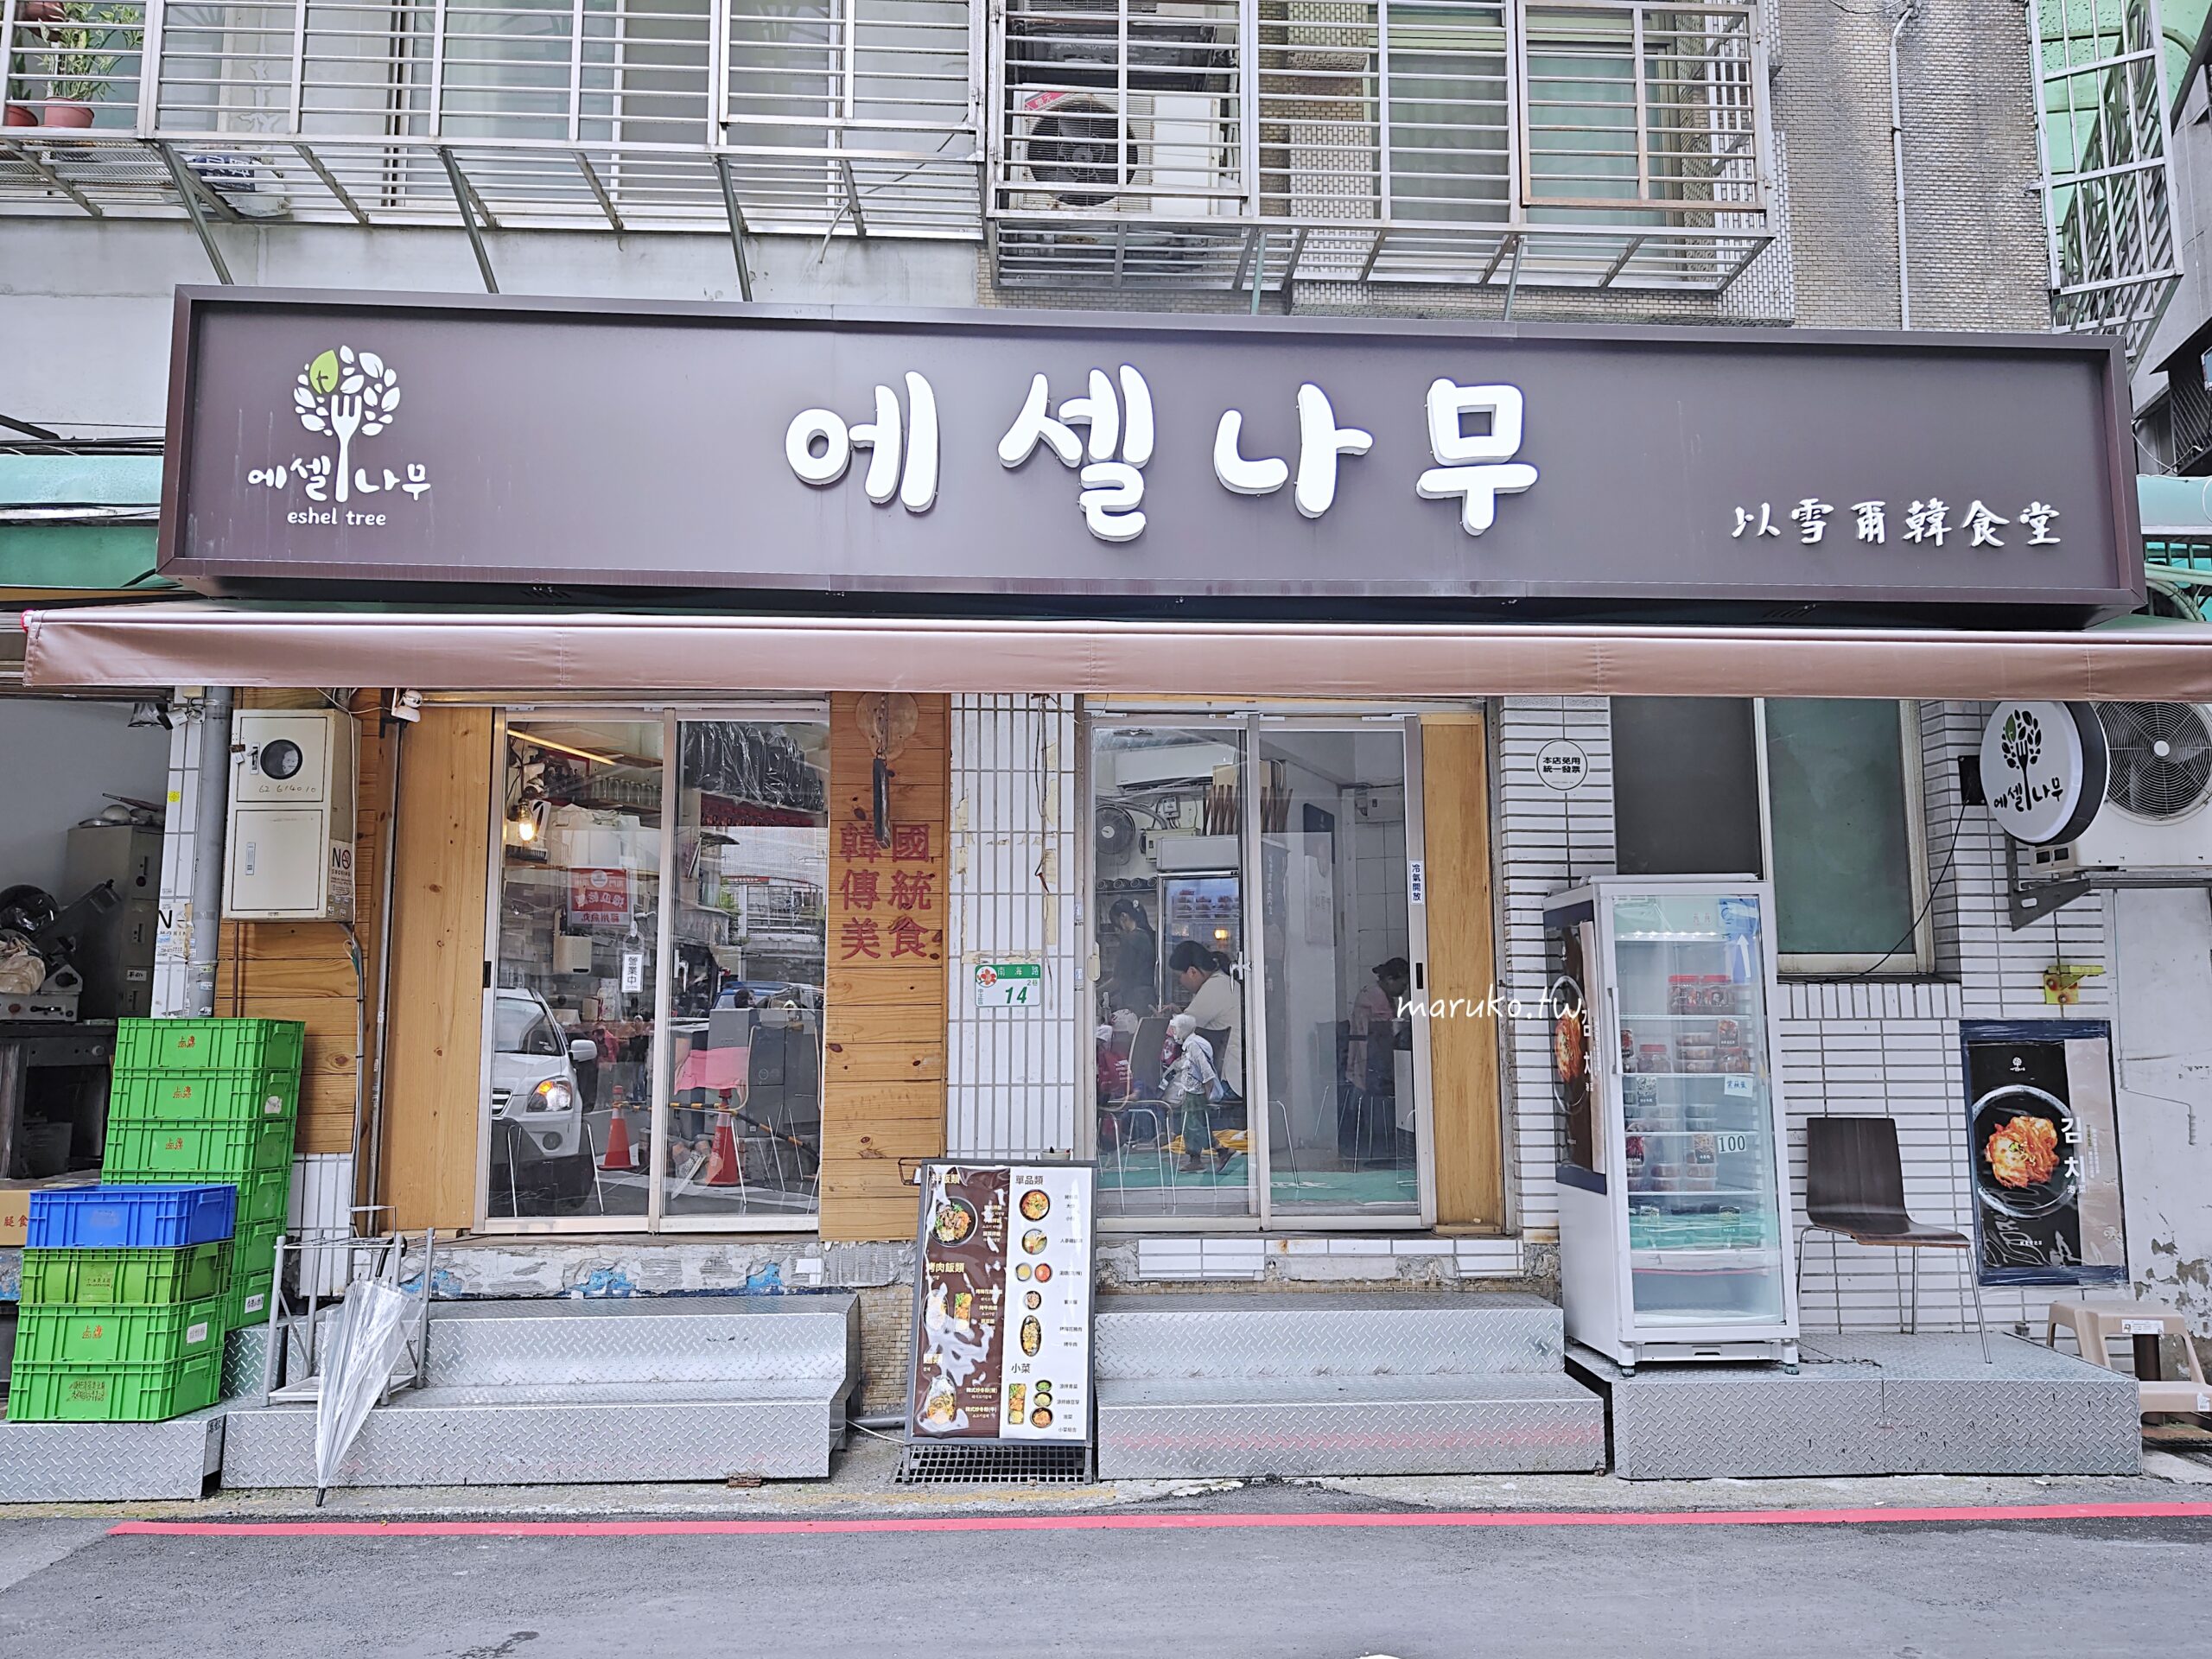 【台北】以雪爾韓食堂 一個人也能吃的百元韓式風味小館(有外賣韓式小菜) @Maruko與美食有個約會